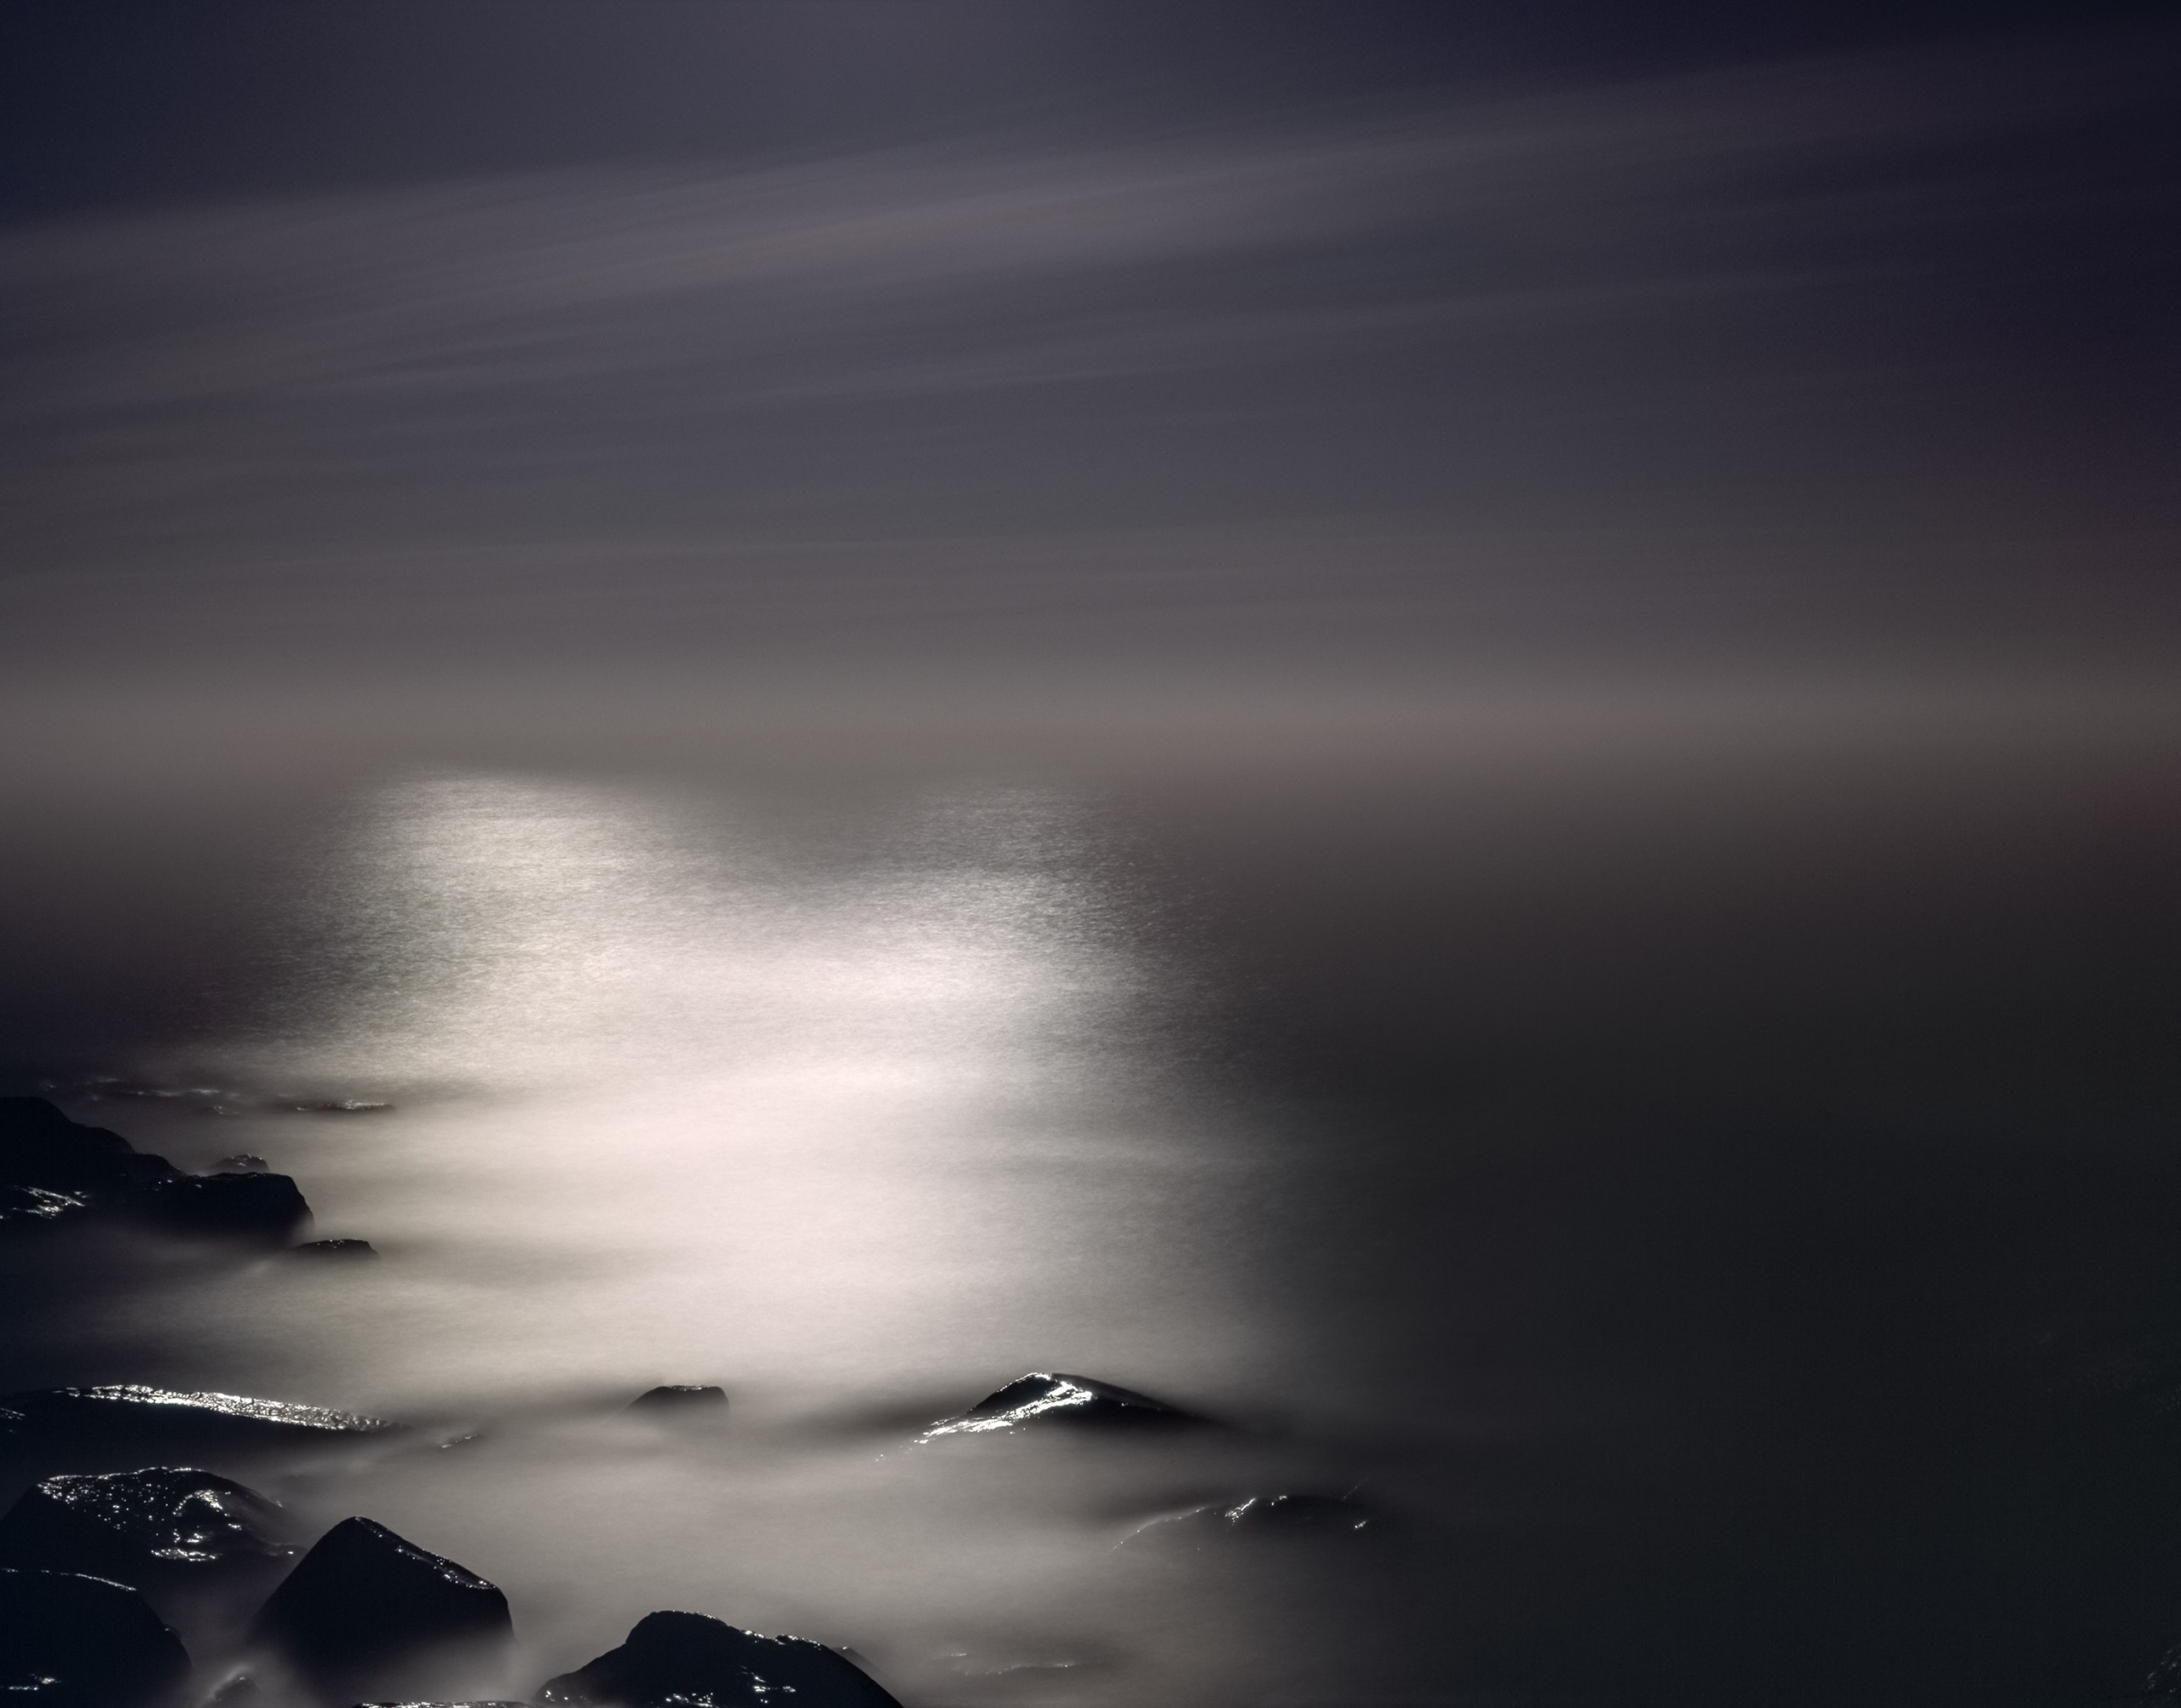 Ocean Moonlight, near Seaside, Oregon 